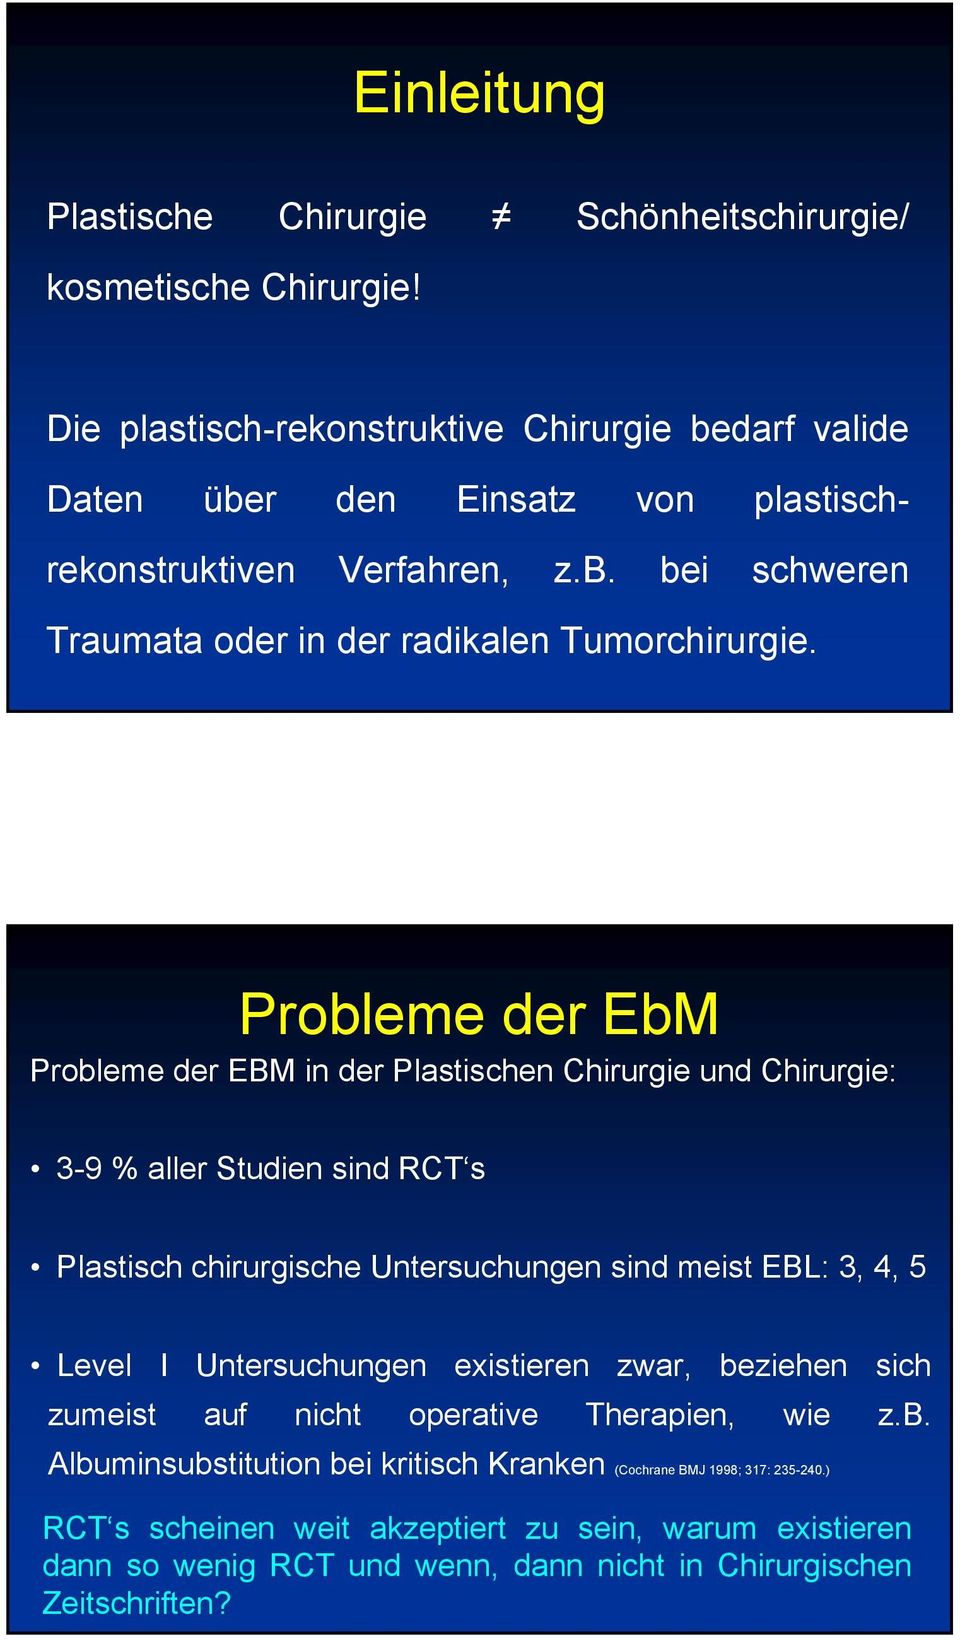 Probleme der EbM Probleme der EBM in der Plastischen Chirurgie und Chirurgie: 3-9 % aller Studien sind RCT s Plastisch chirurgische Untersuchungen sind meist EBL: 3, 4, 5 Level I